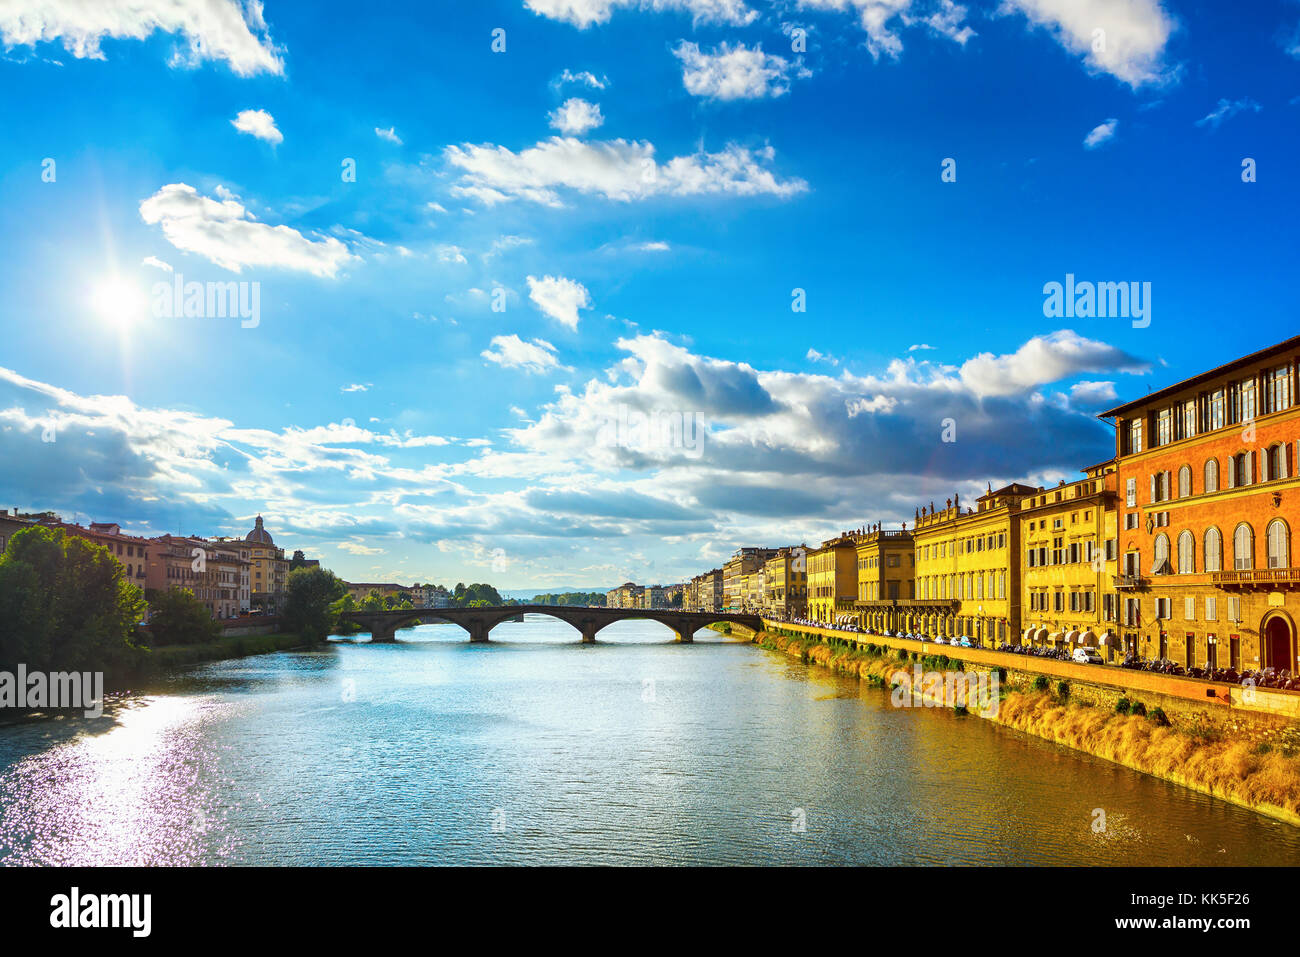 Florenz oder Firenze, Ponte Santa Trinita mittelalterliche Brücke Wahrzeichen an Arno, sunset Landschaft der Toskana, Italien. Stockfoto